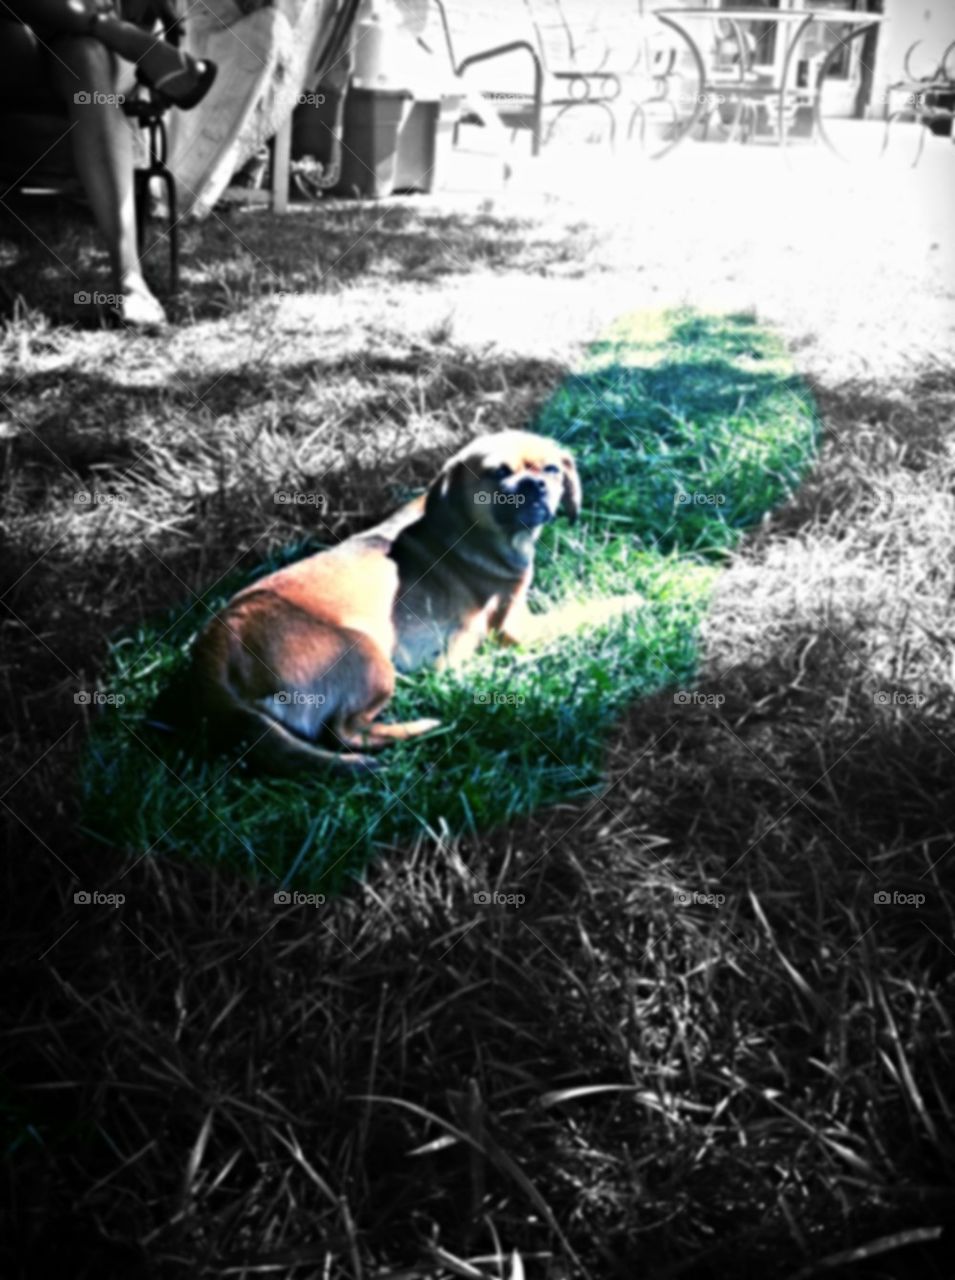 Dogg in grass